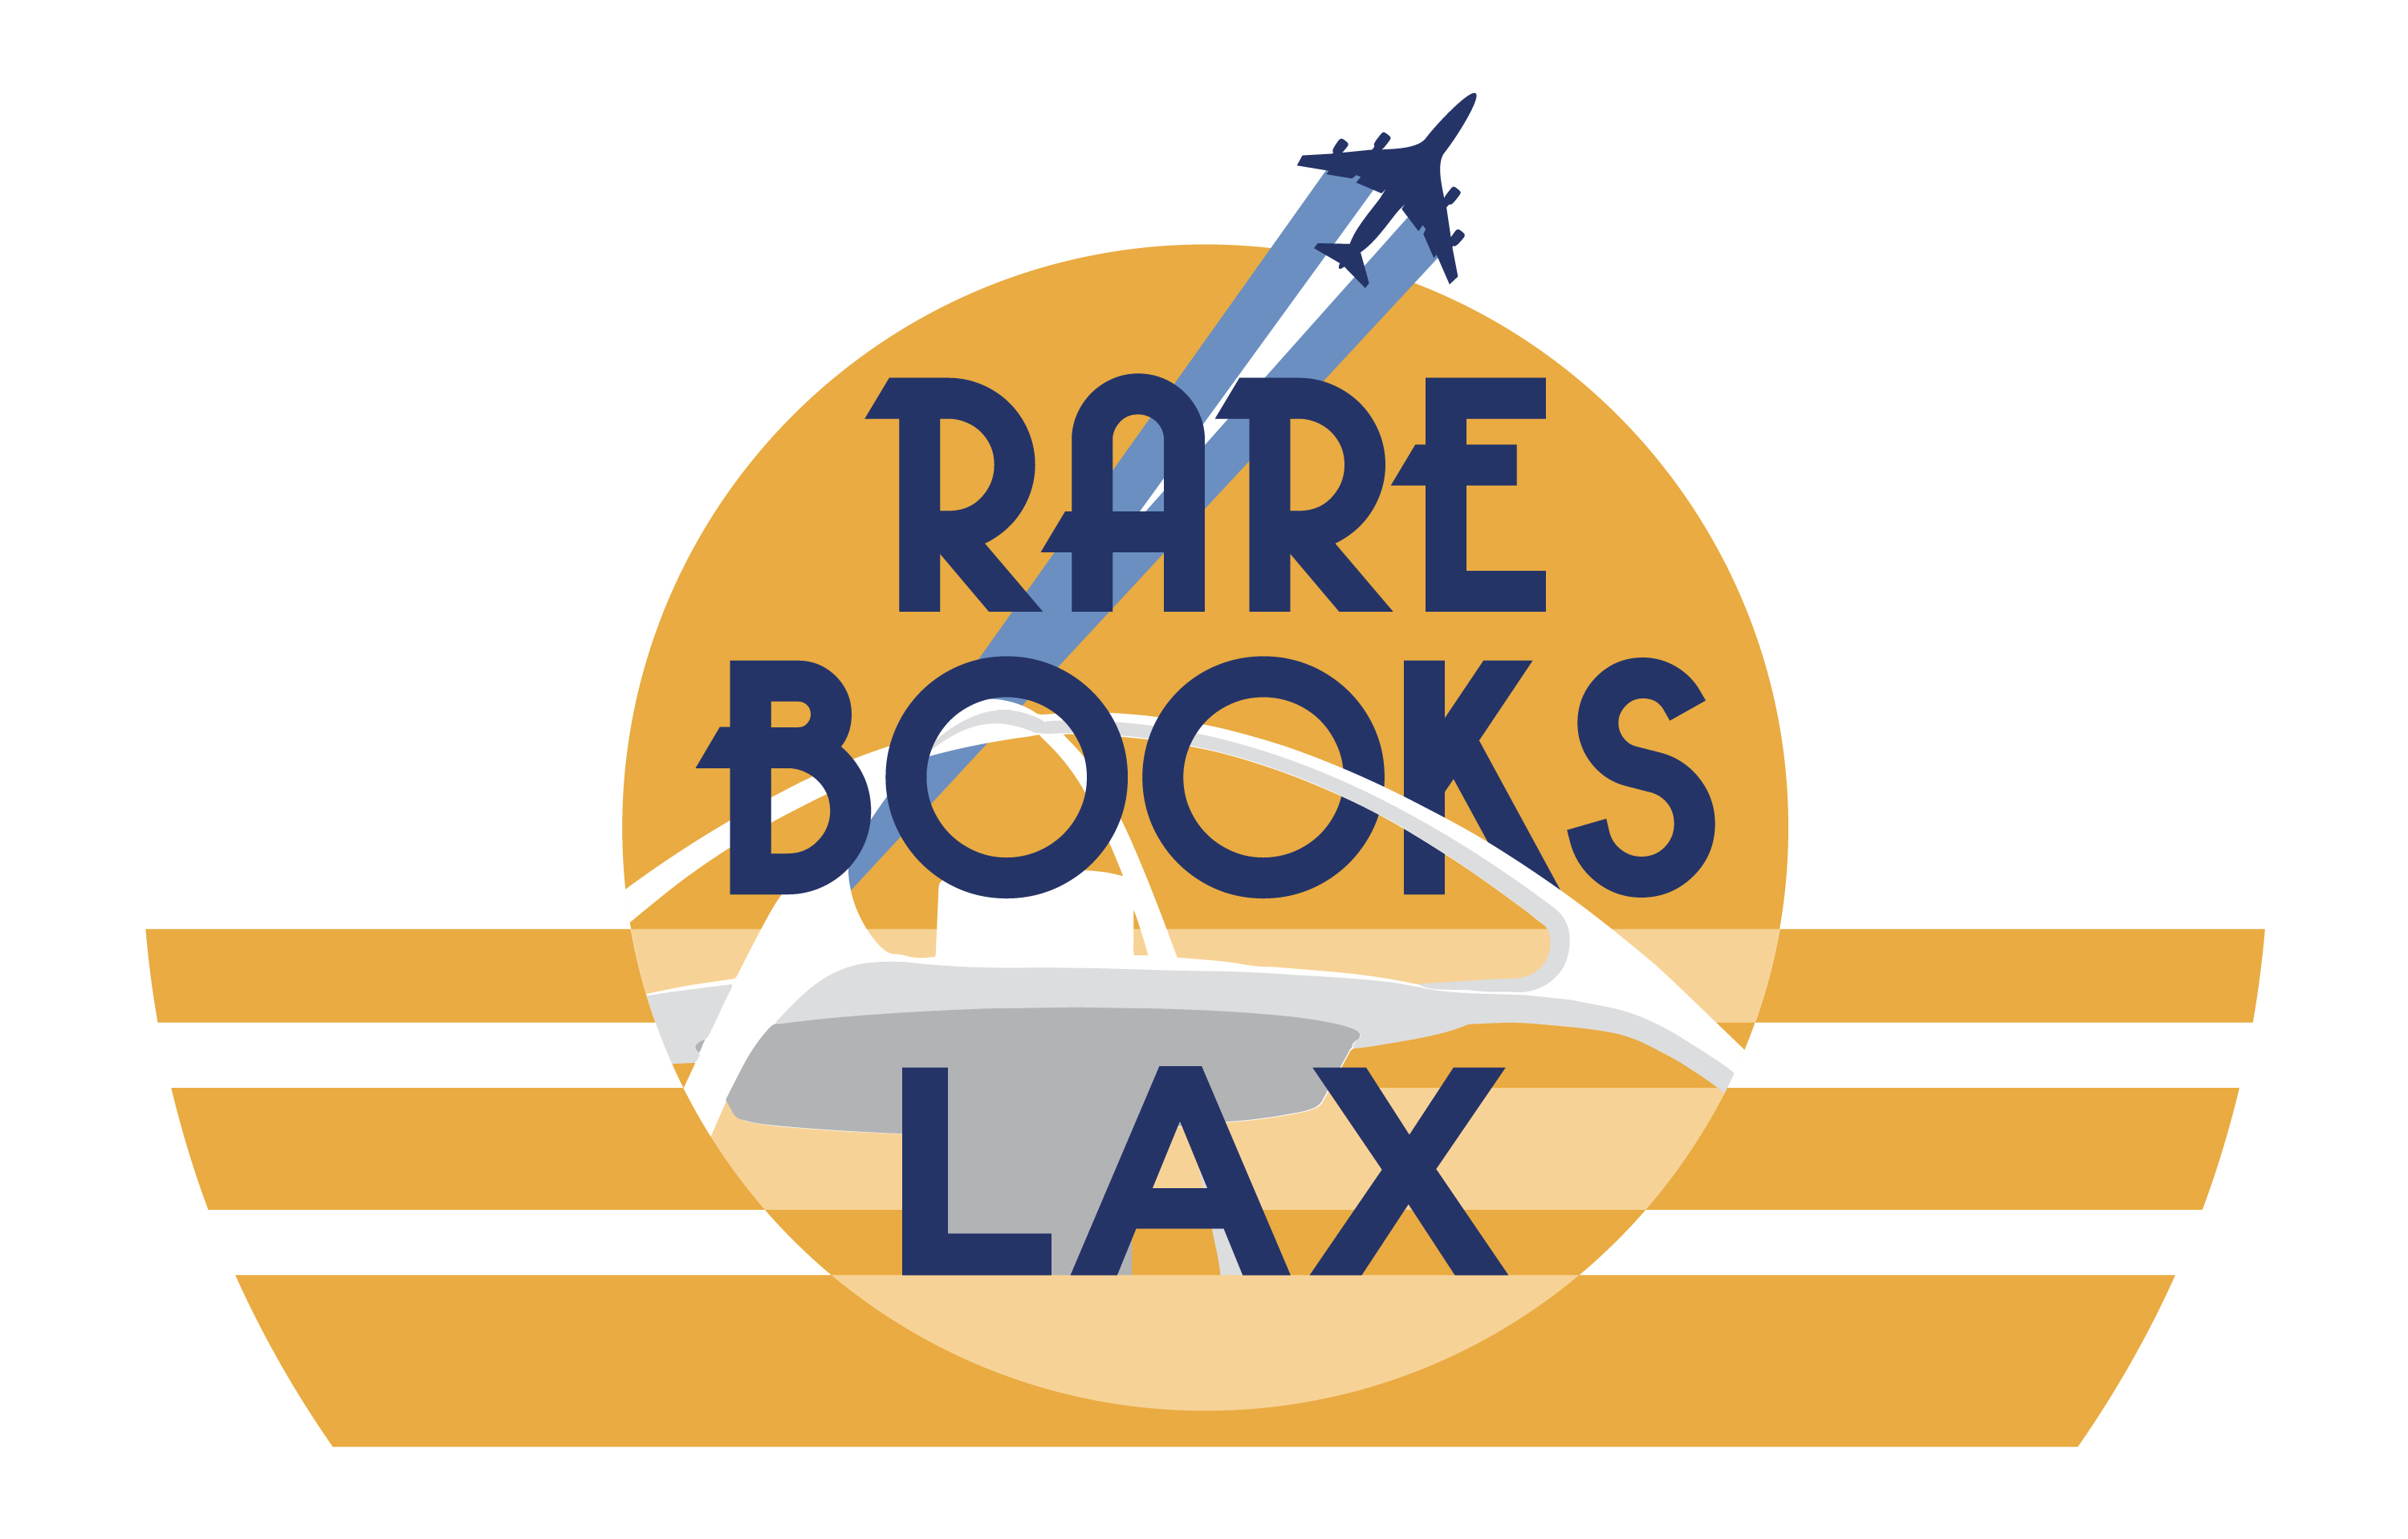 Rare Books LAX